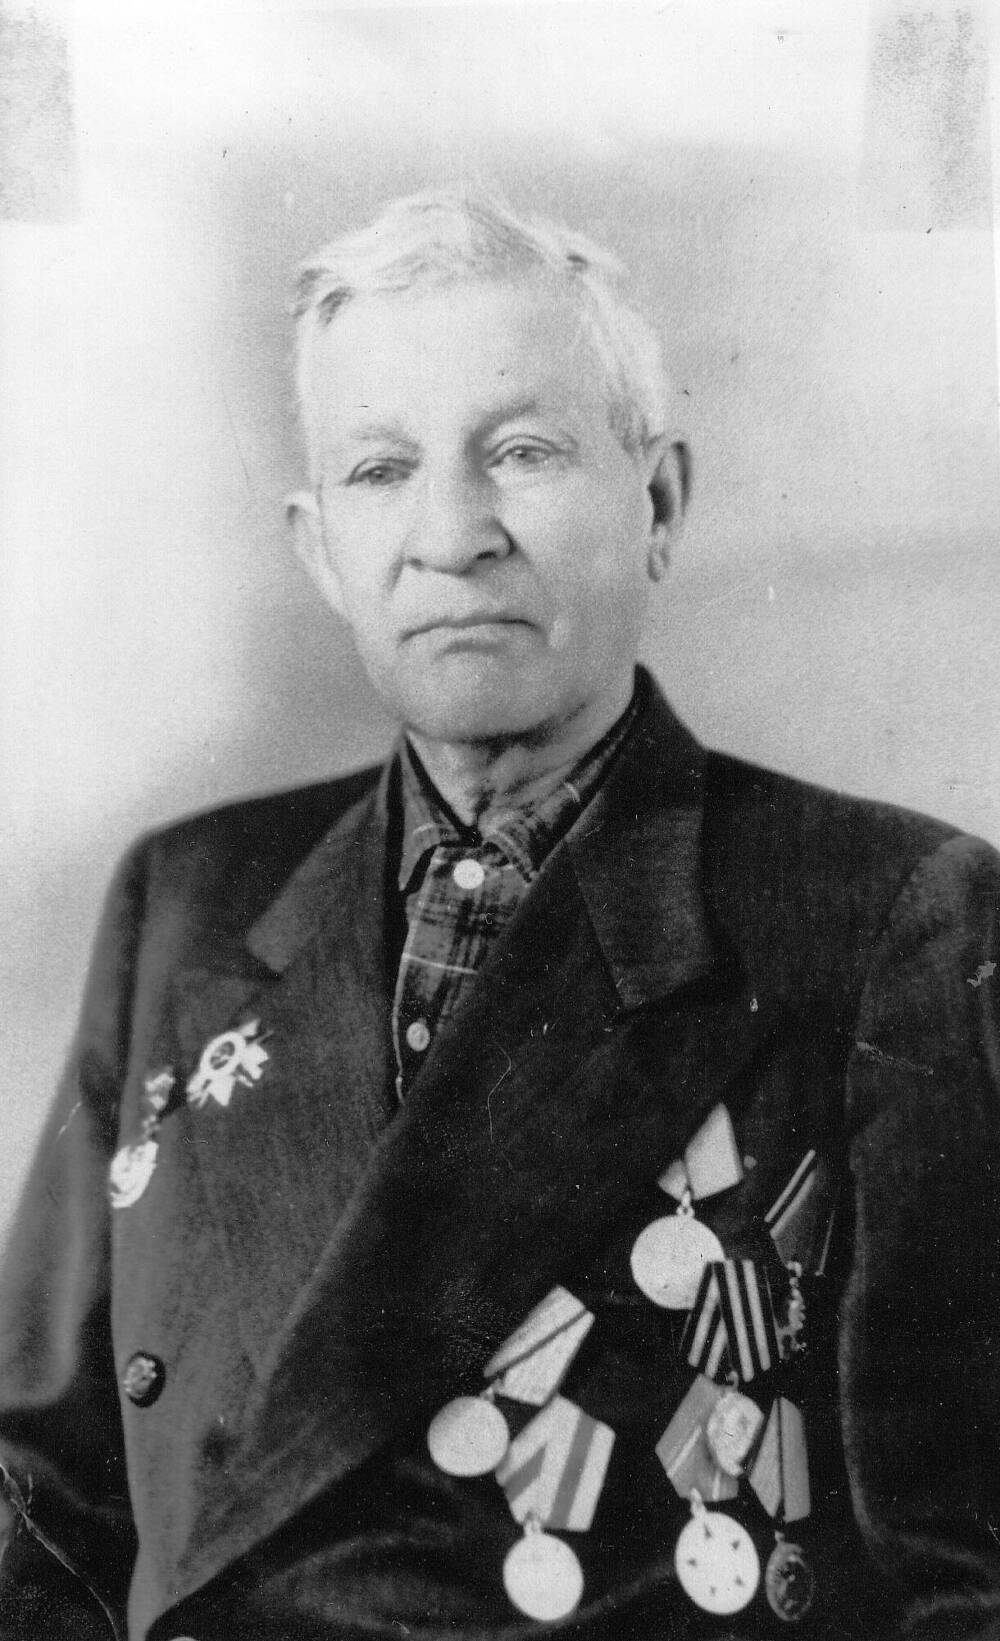 Фотография черно-белая Радушева Василия Степановича, ветерана Великой Отечественной войны 1941-1945 г. г.